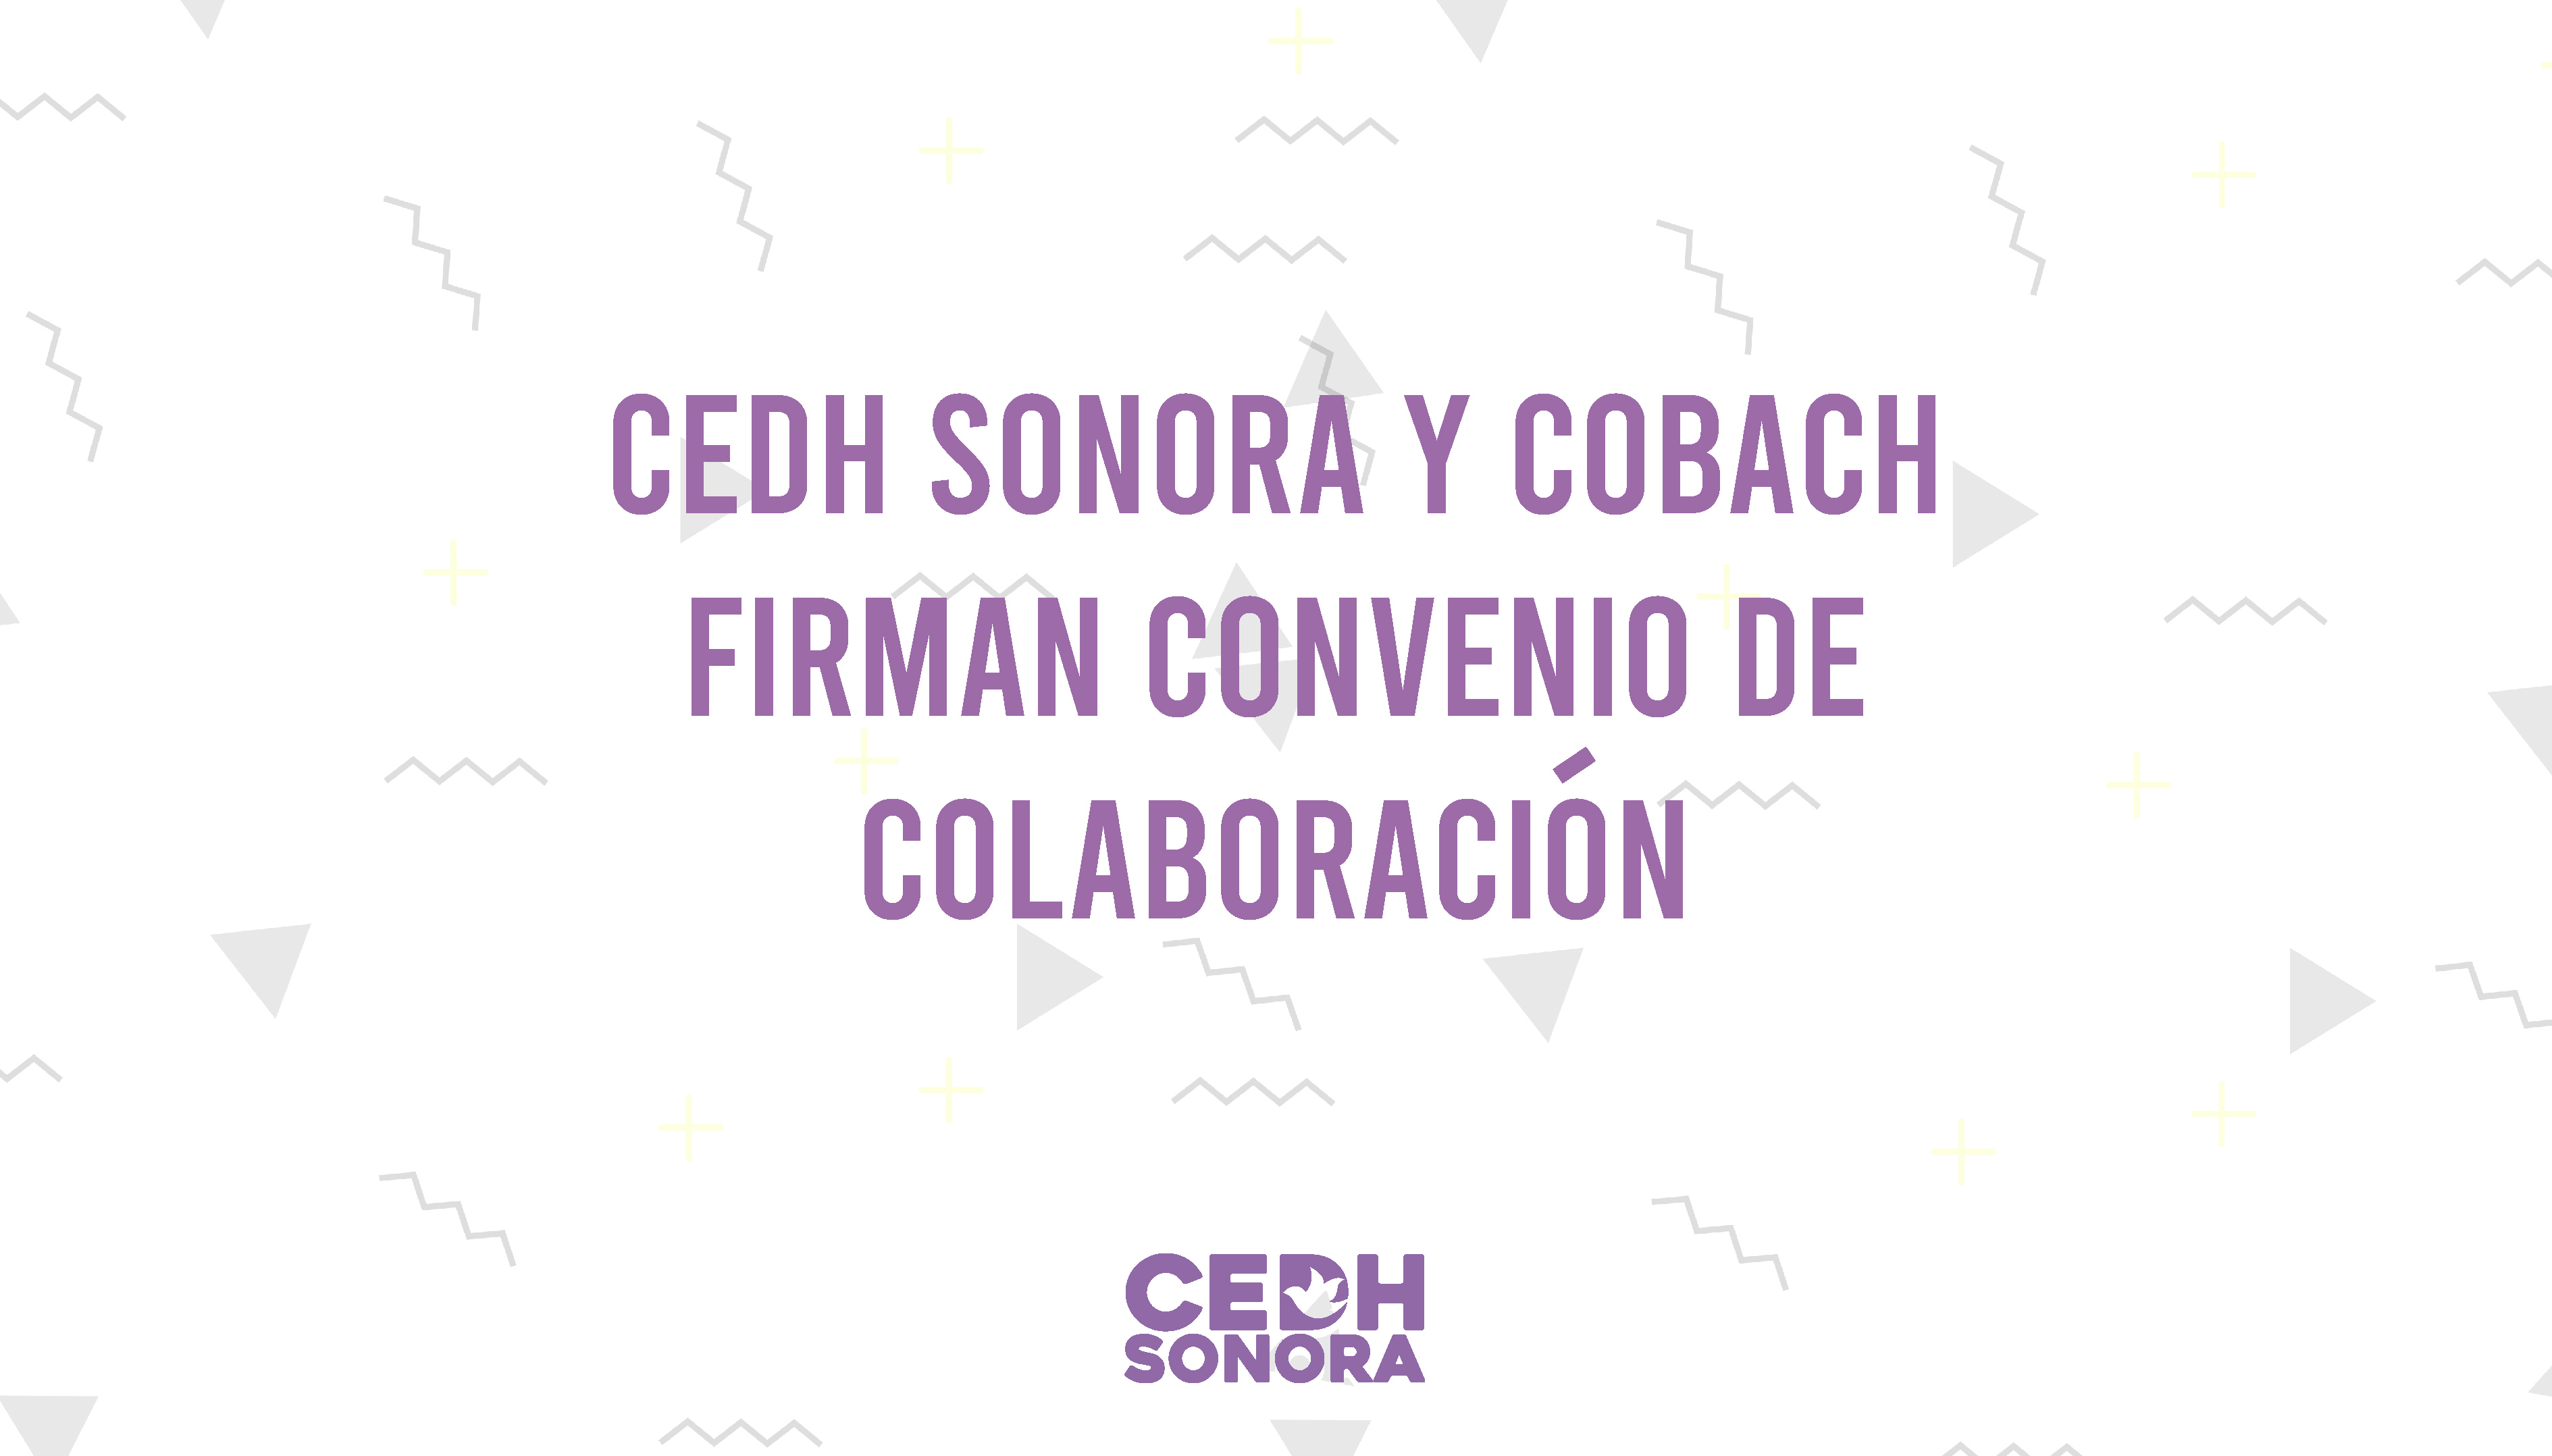 La CEDH y el COBACH firman convenio de colaboración